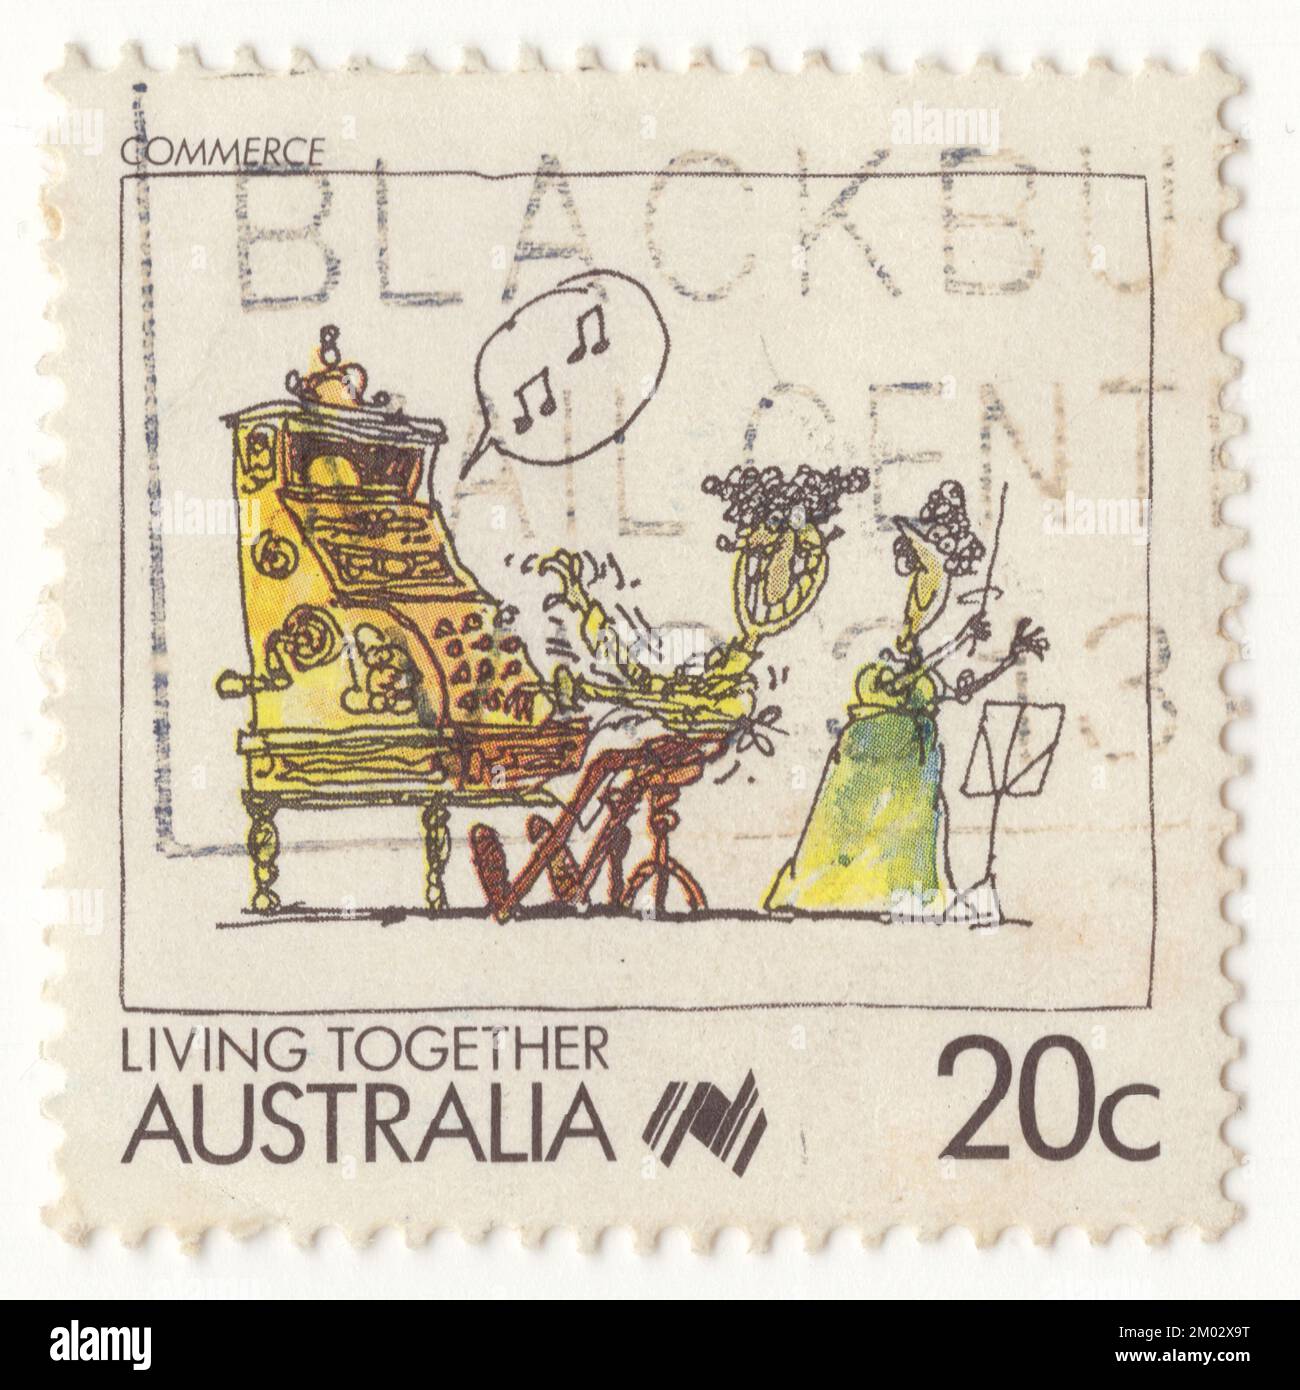 AUSTRALIEN — 1988. Februar 17: Ein mehrfarbiger Briefmarken von 20 Cent, der die Allegory Composition Commerce darstellt. Cartoons Zum Zusammenleben Stockfoto